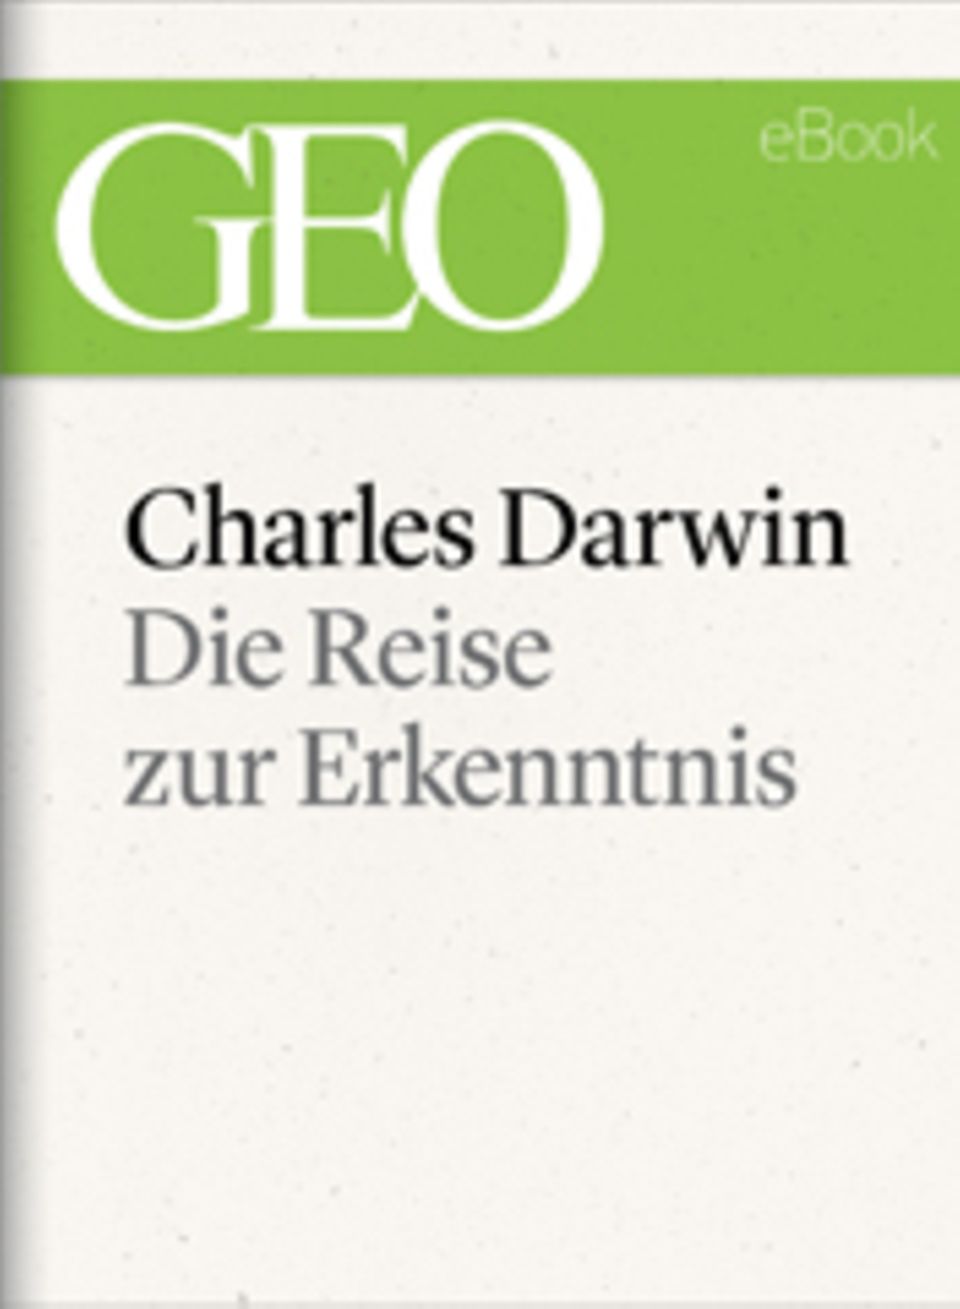 Die Reise zur Erkenntnis: GEO eBook "Charles Darwin"